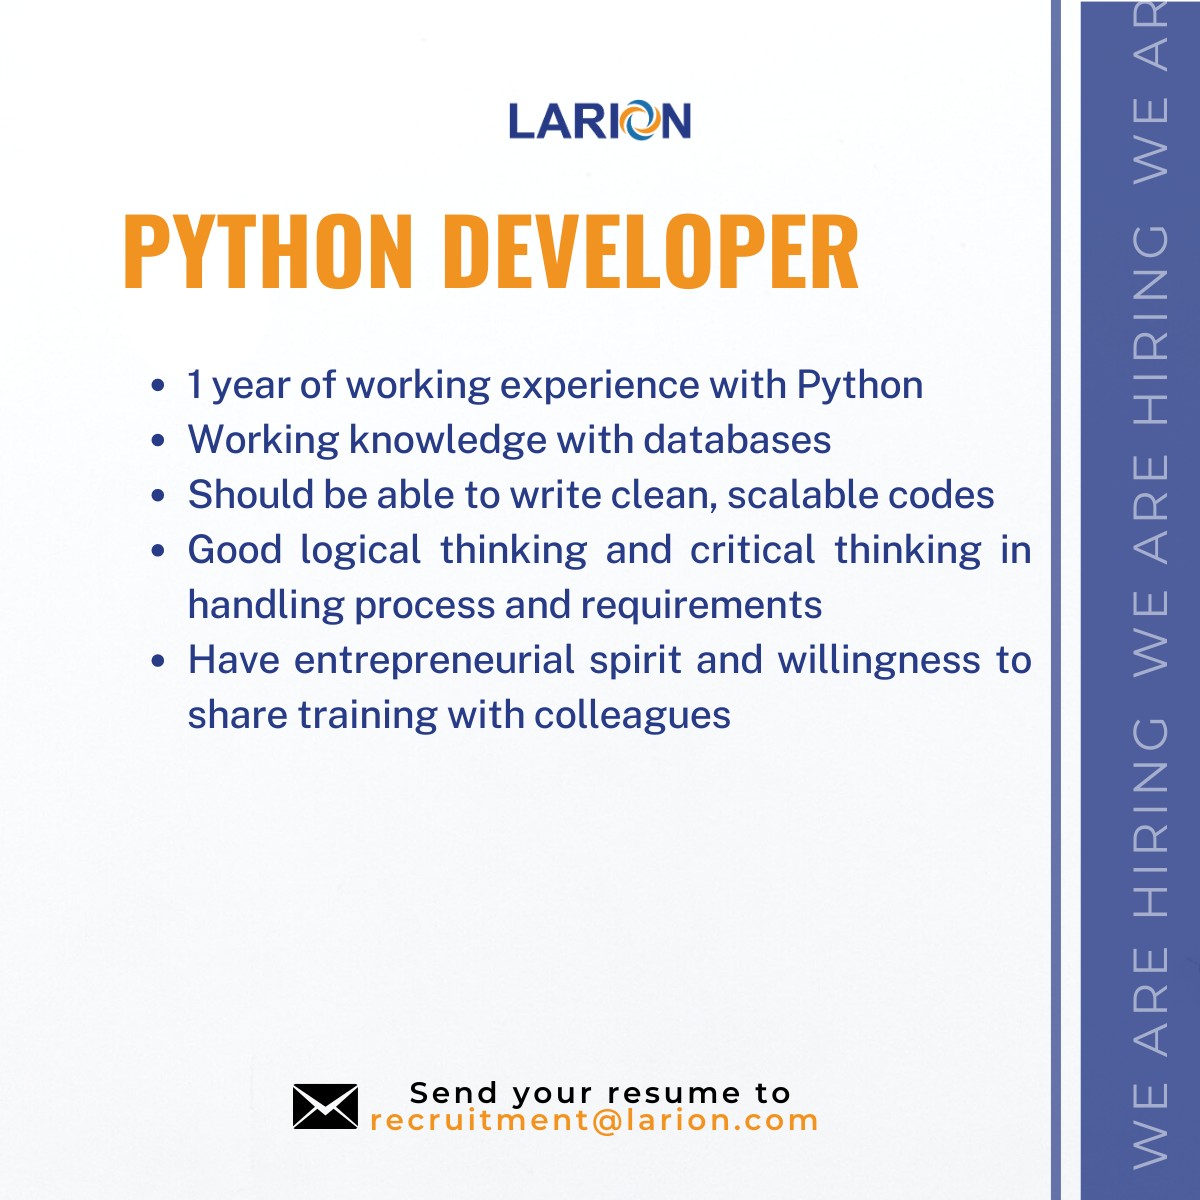 Larion tuyển dụng vị trí Python Developer